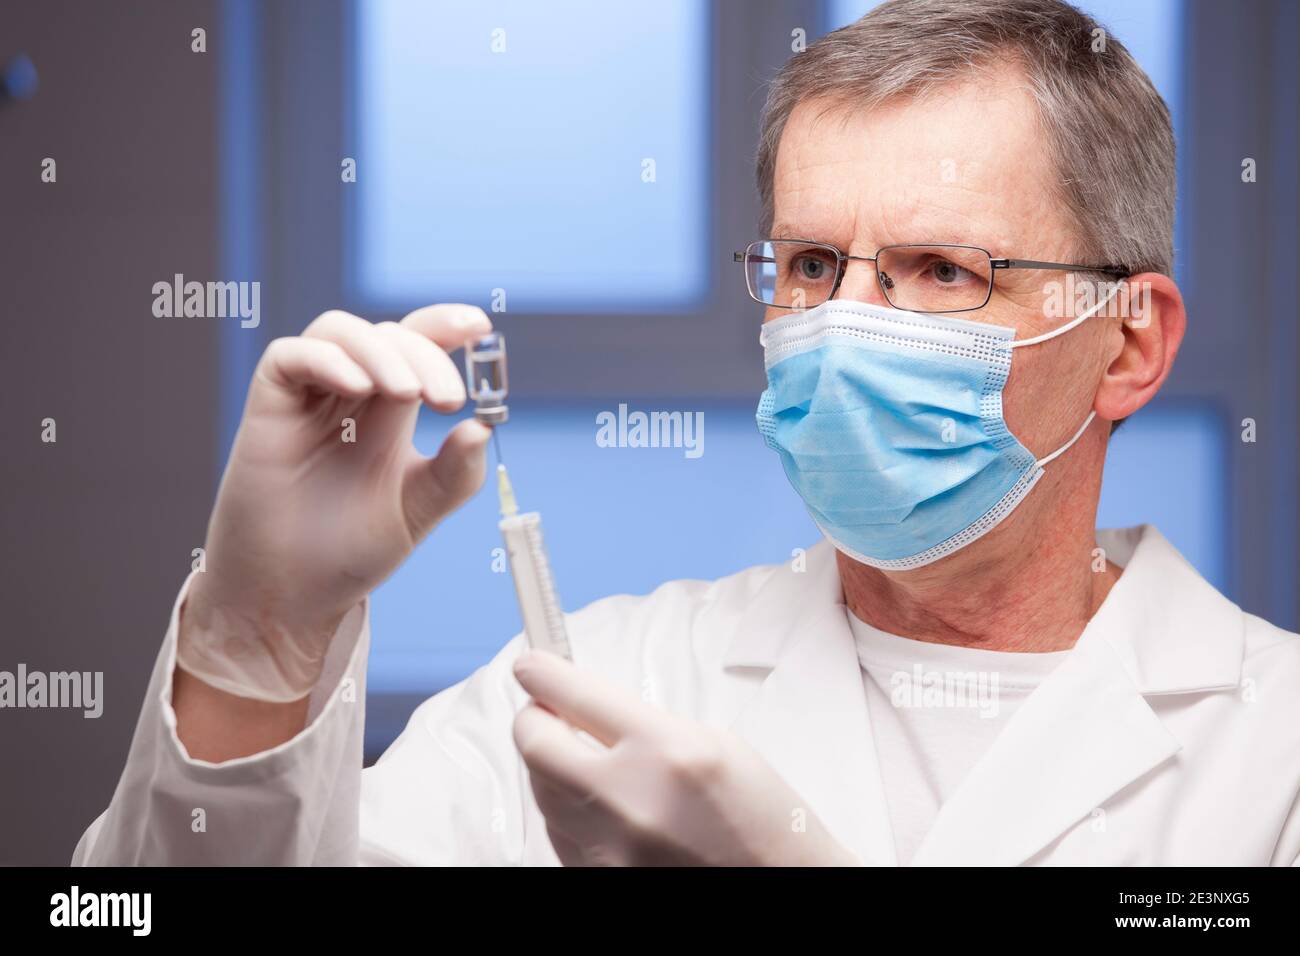 Arzt mit medizinischer Maske Vorbereitung einer Spritze für die Impfung gegen Covid-19 - Fokus auf das Gesicht Stockfoto